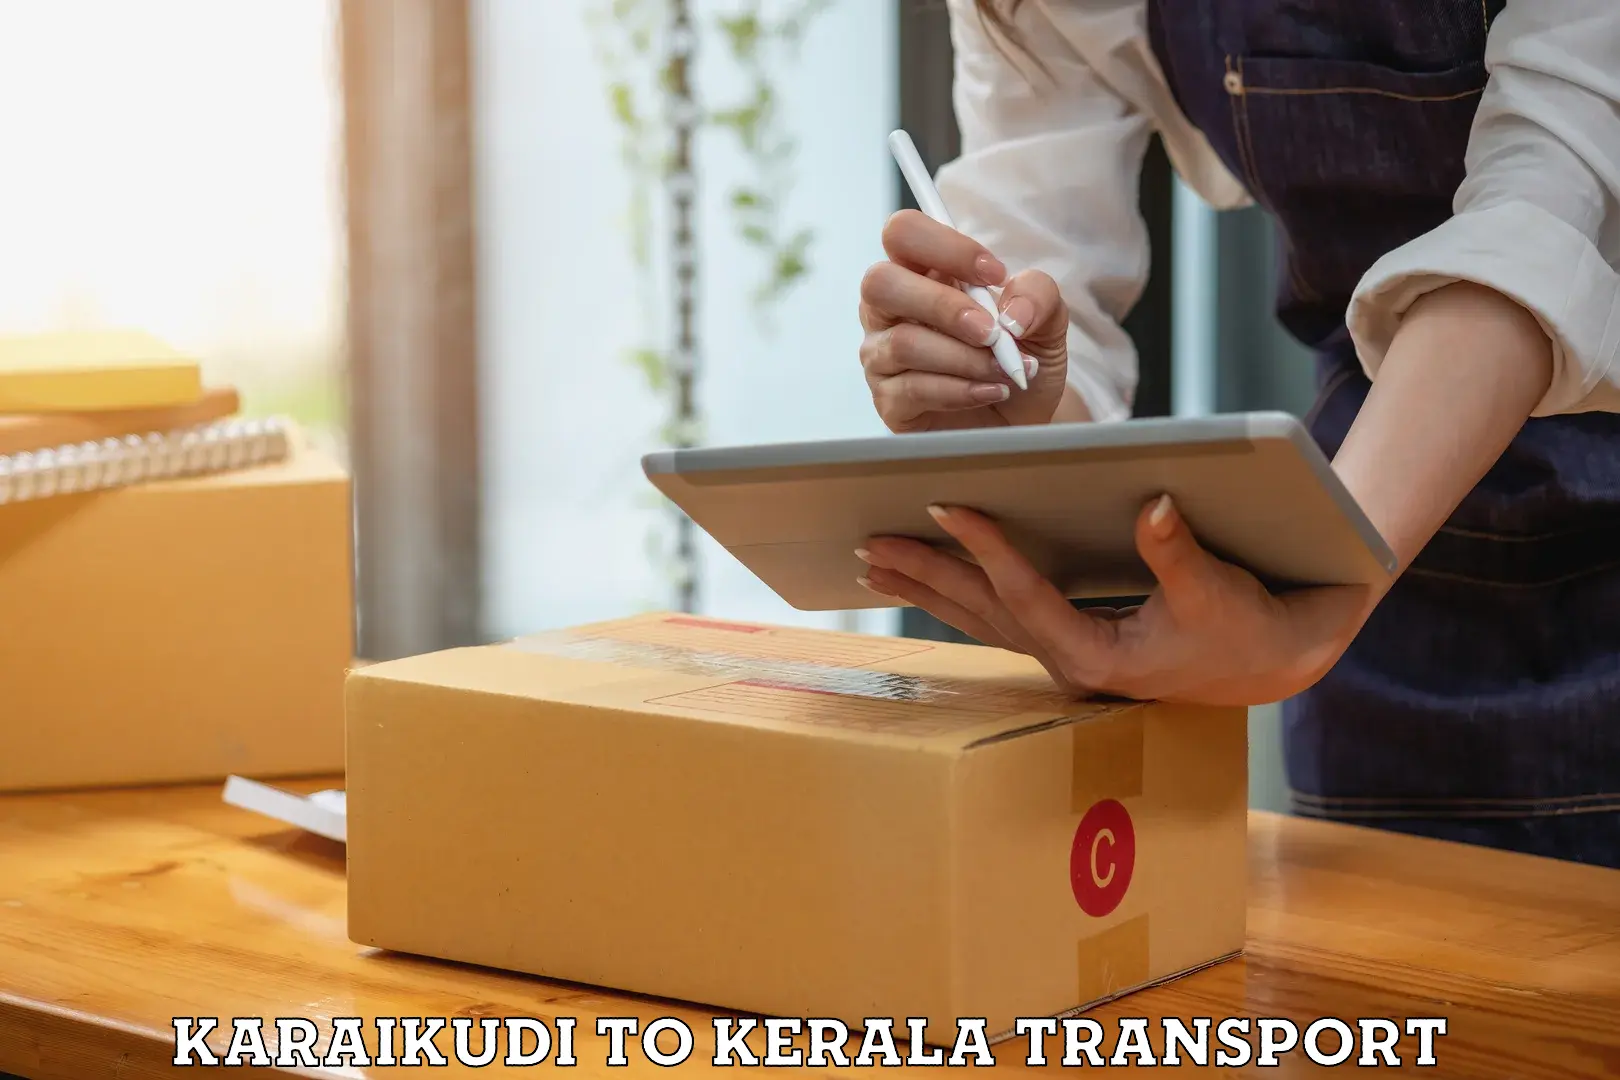 Road transport online services Karaikudi to Kozhikode